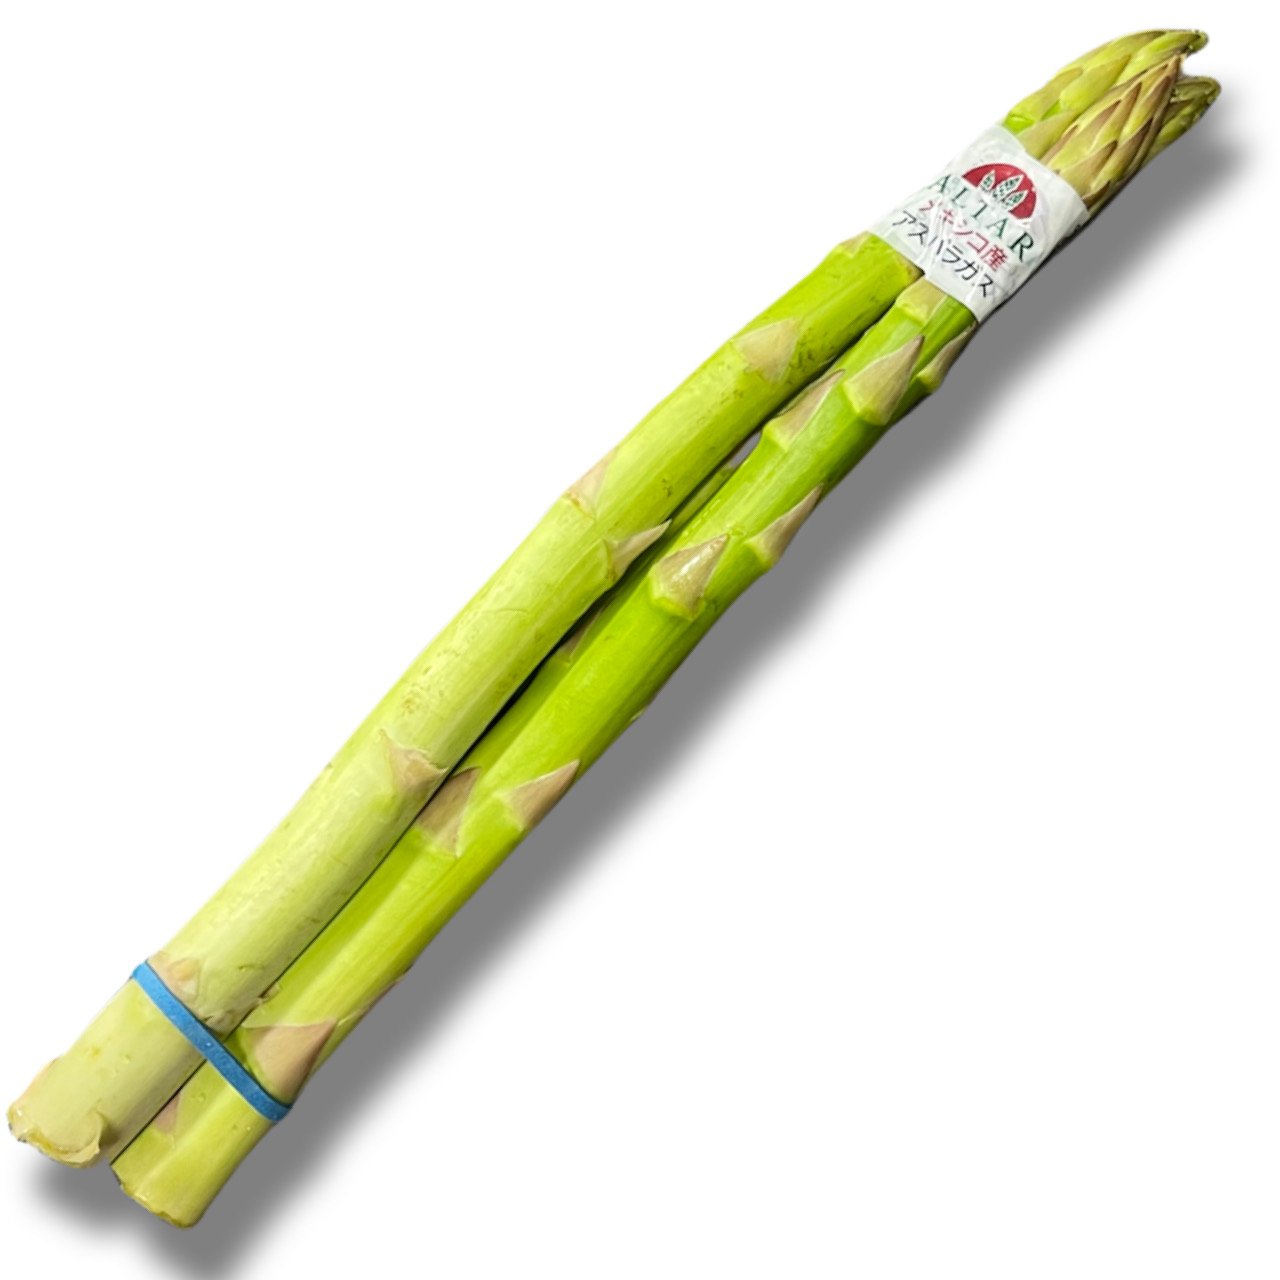 AXp/asparagus